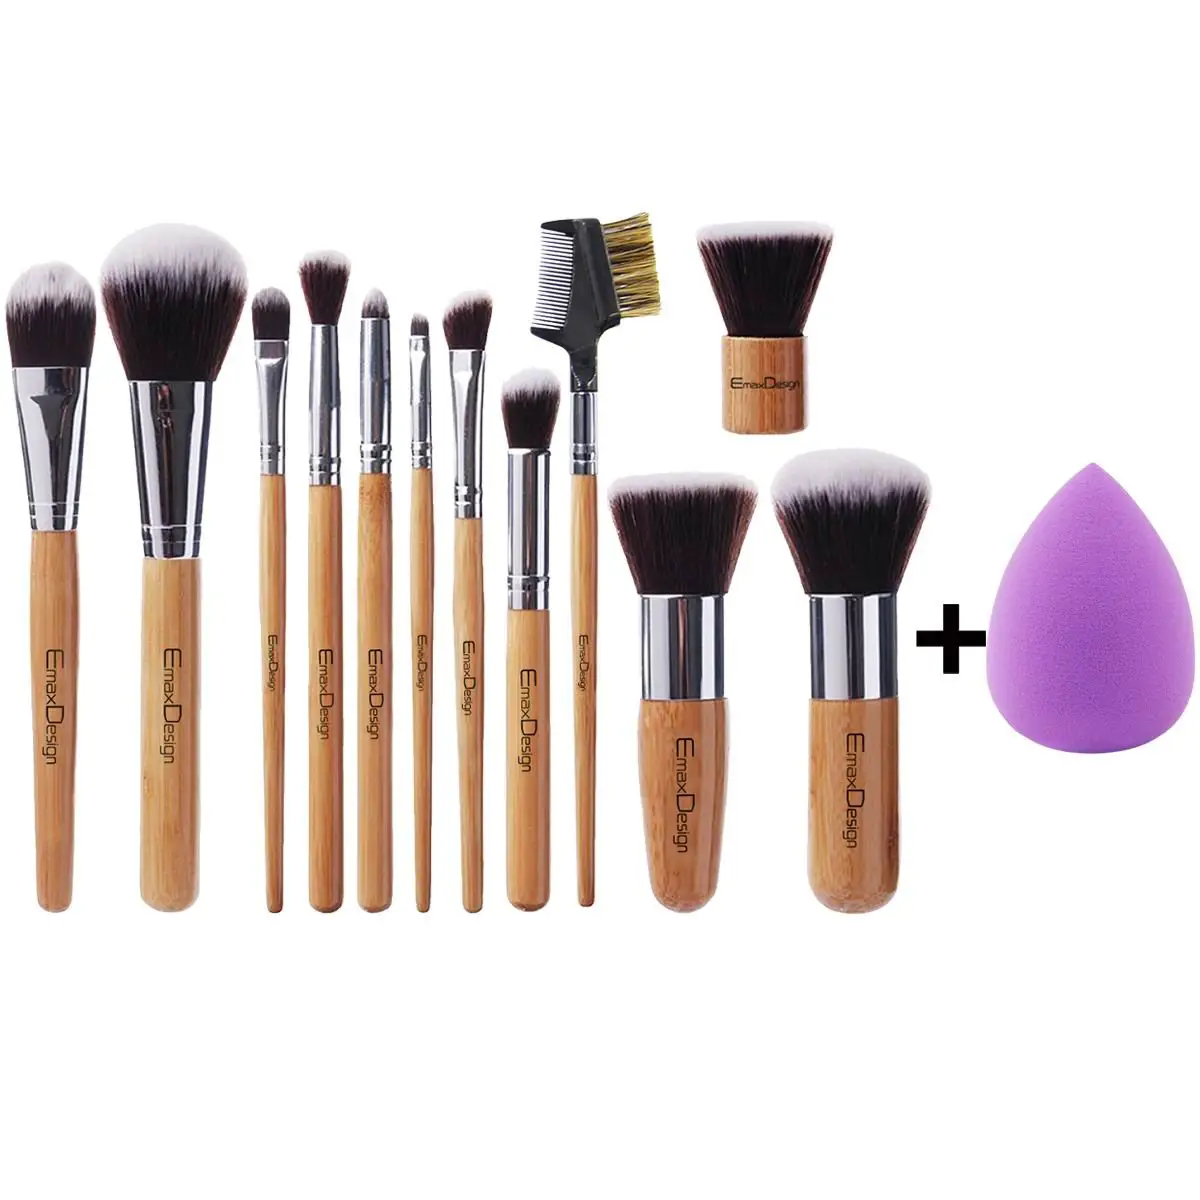 Emaxdesign: Makeup brush set